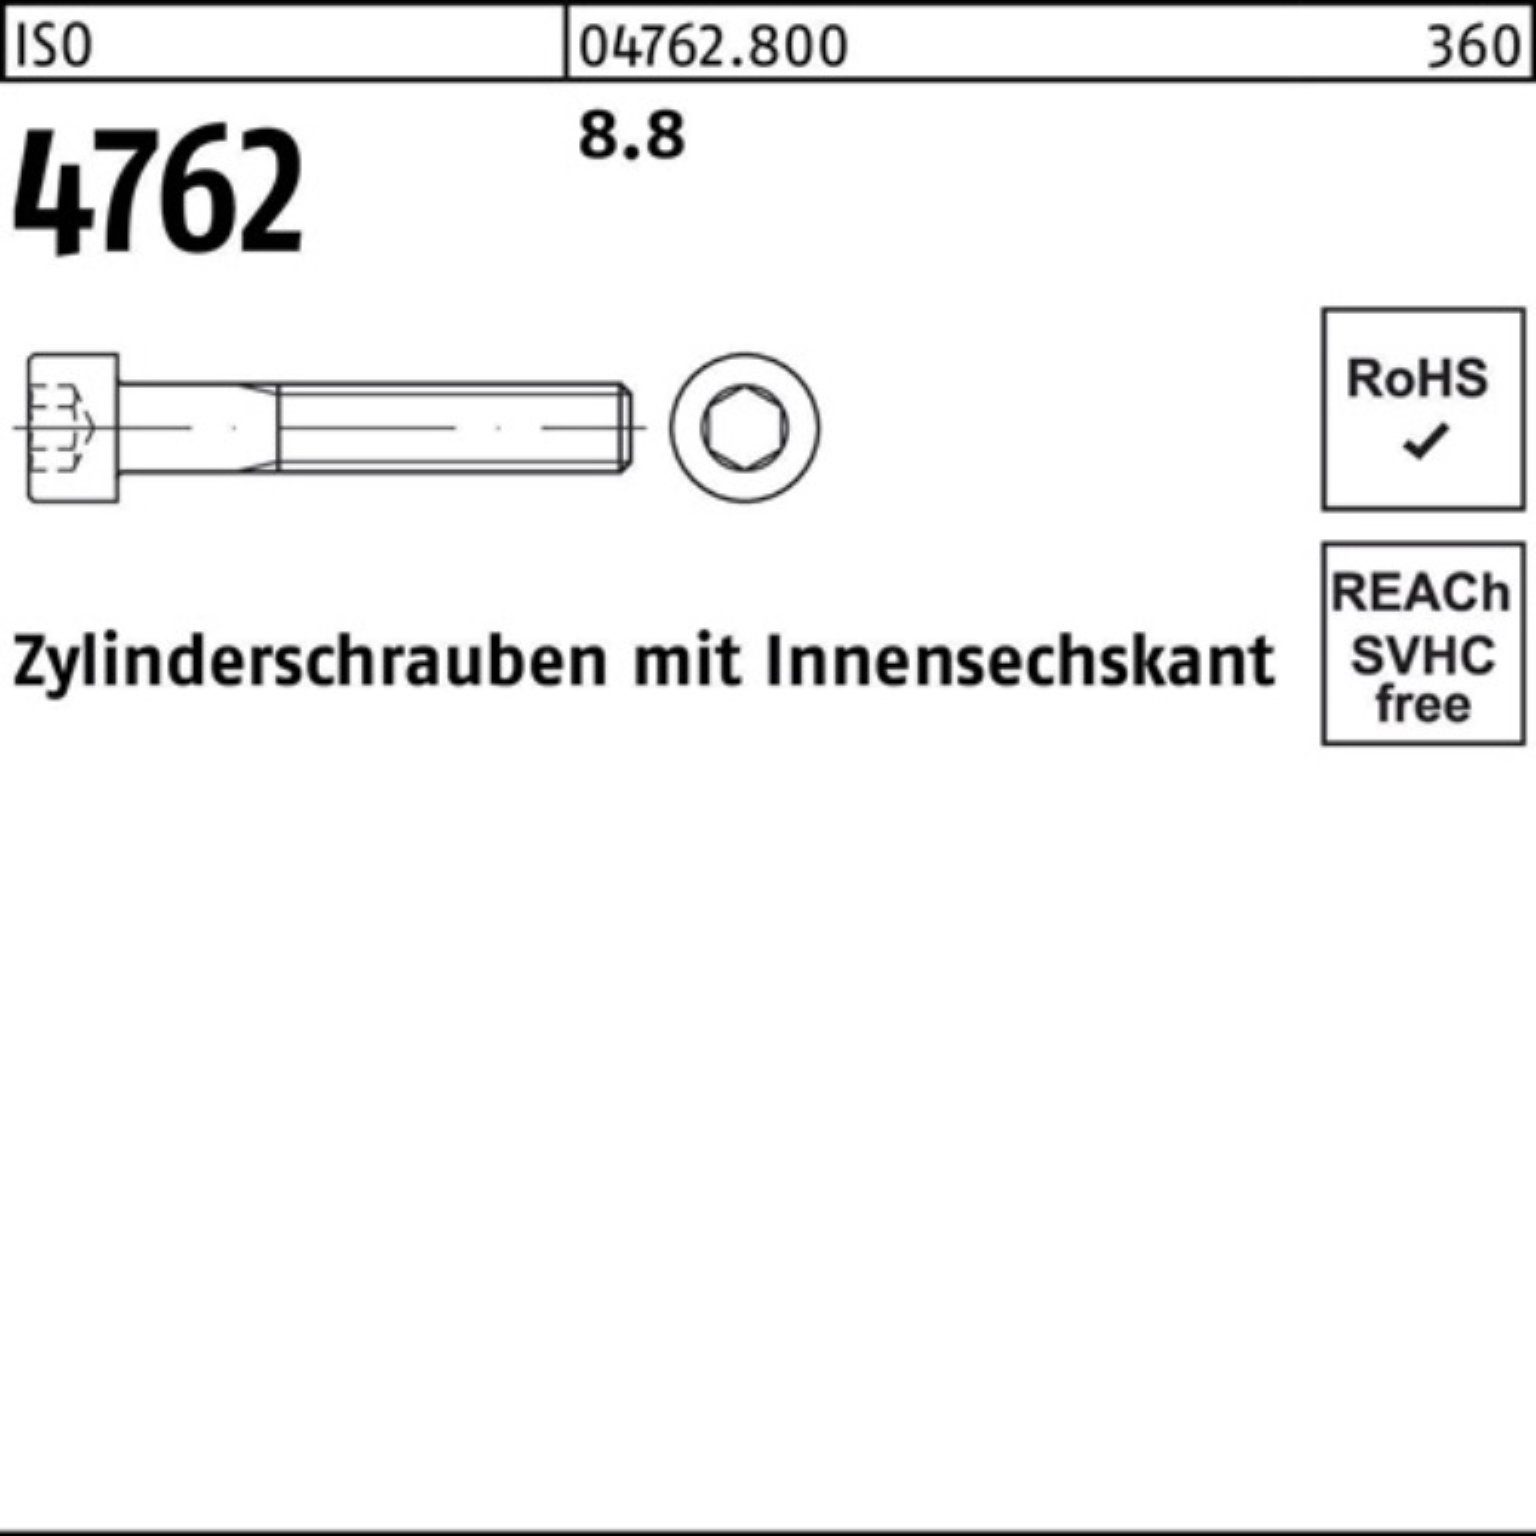 Reyher Zylinderschraube 100er Pack Zylinderschraube 4762 M42x Innen-6kt ISO IS Stück 8.8 1 80